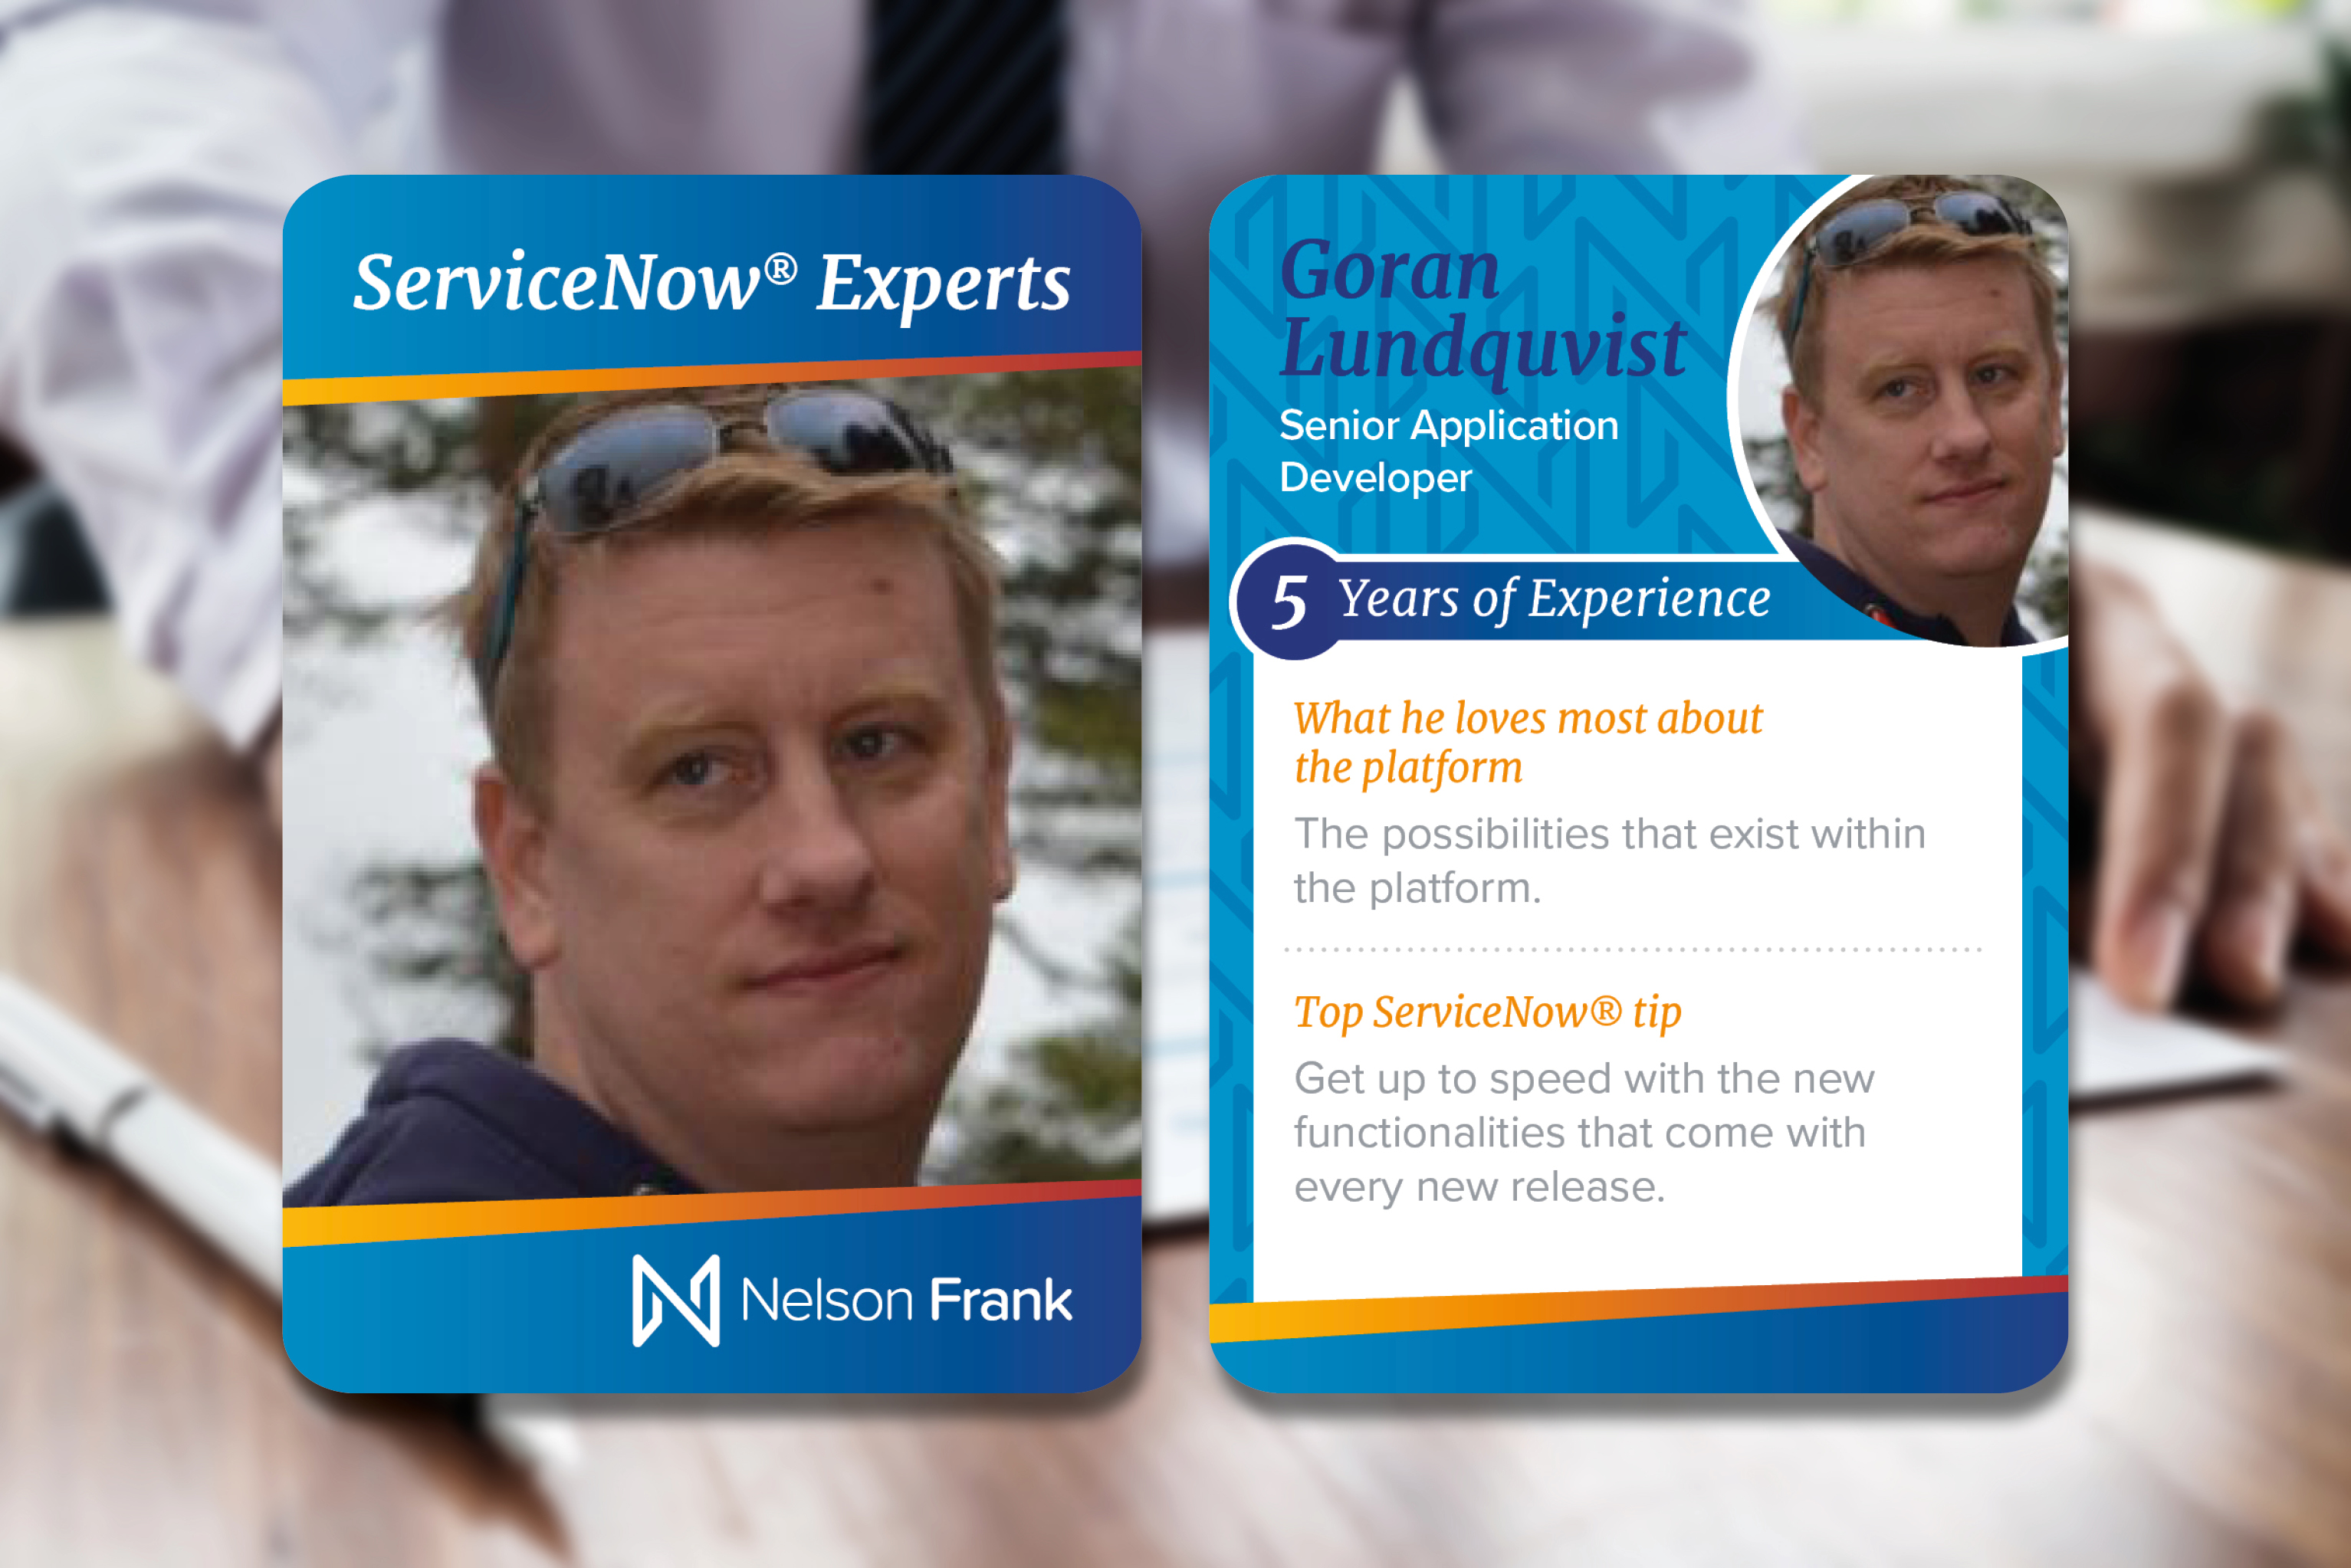 ServiceNow expert Goran Lundquvist